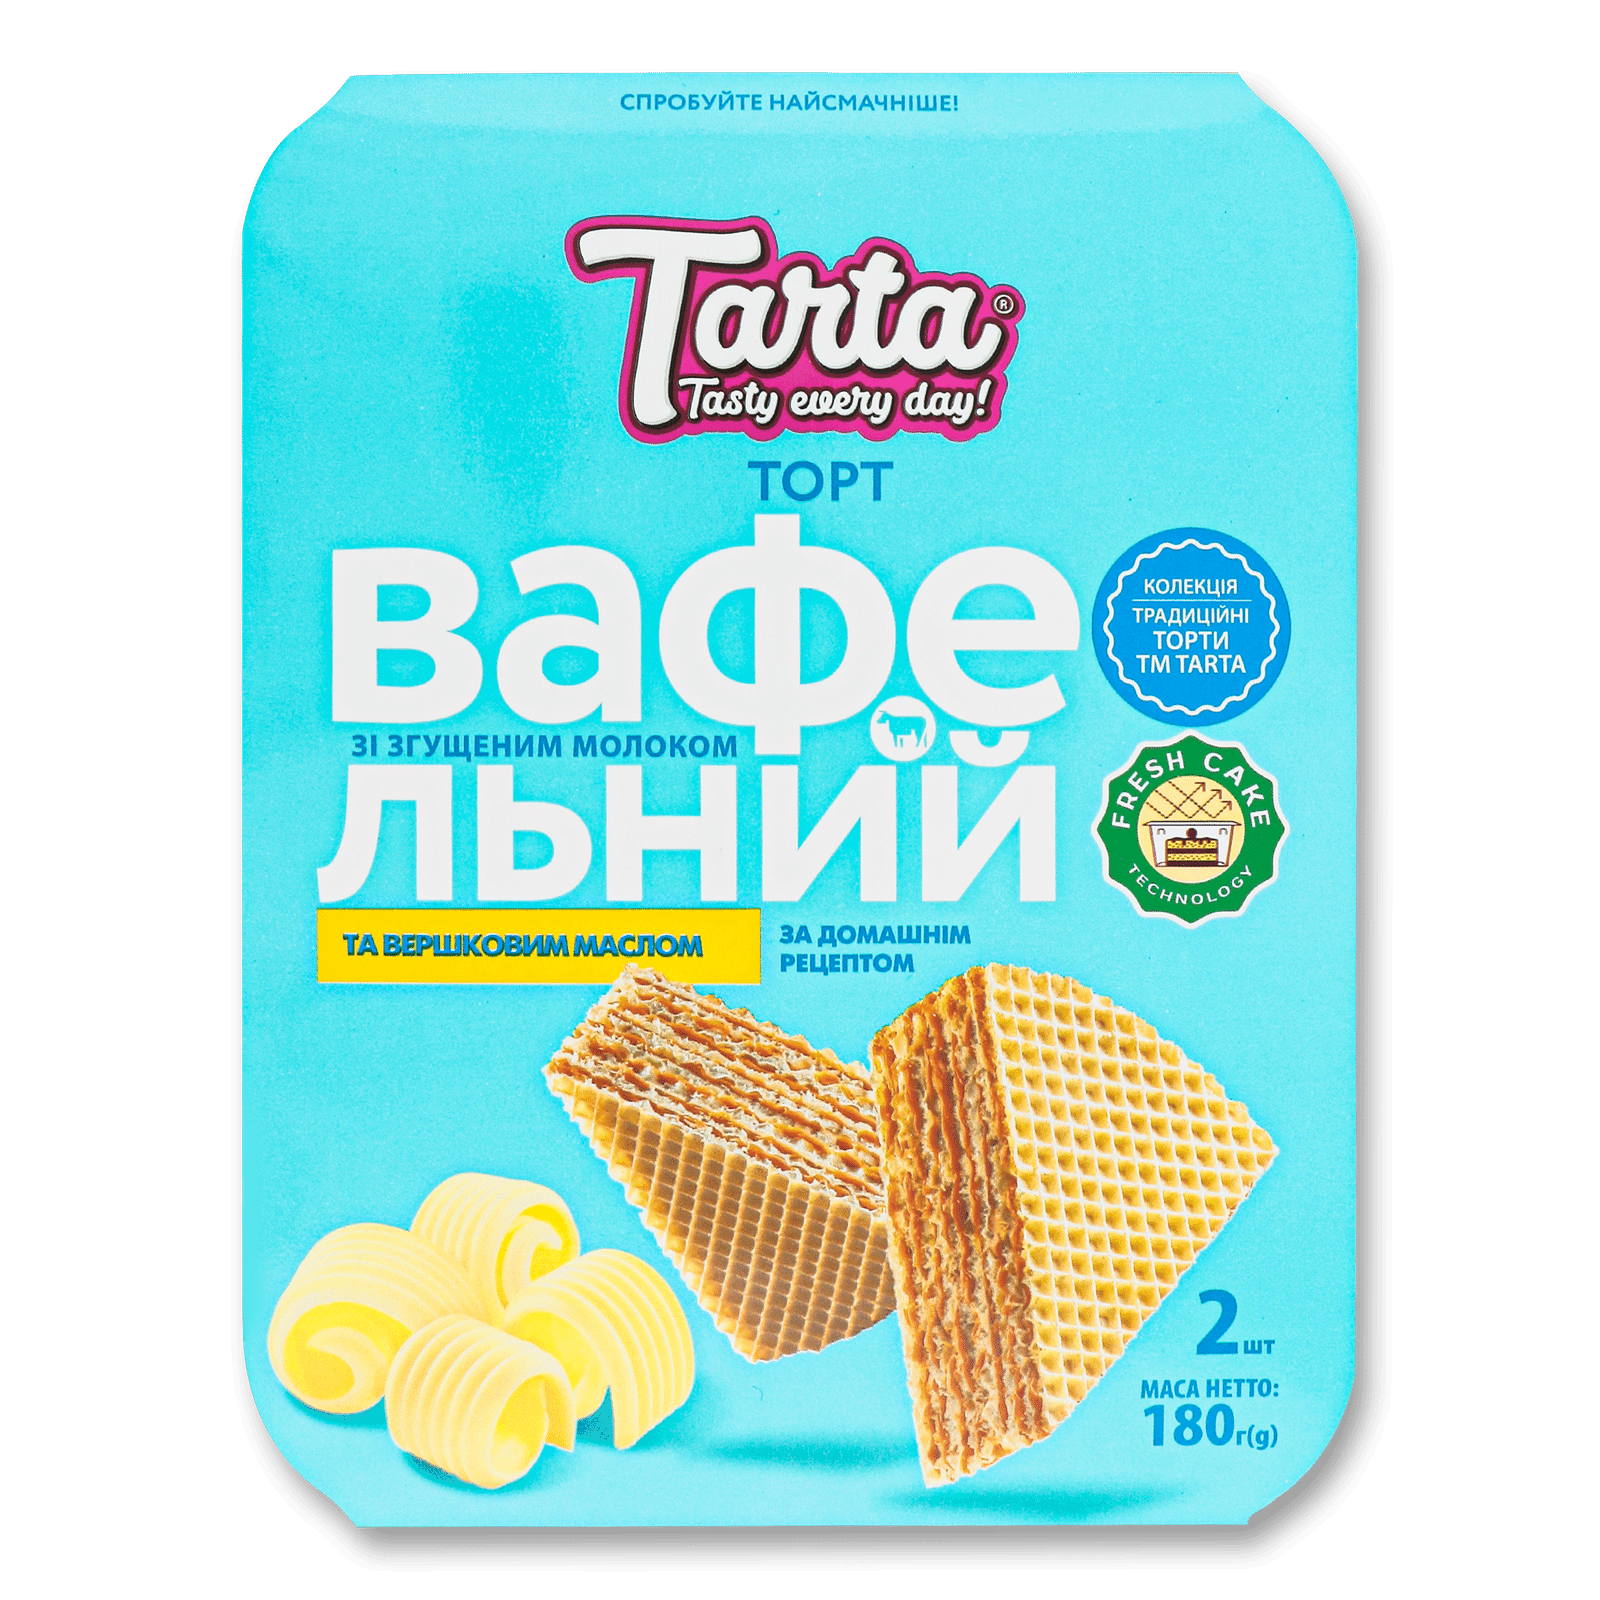 Торт Tarta «Вафельний» зі згущеним молоком та вершковим маслом - 1